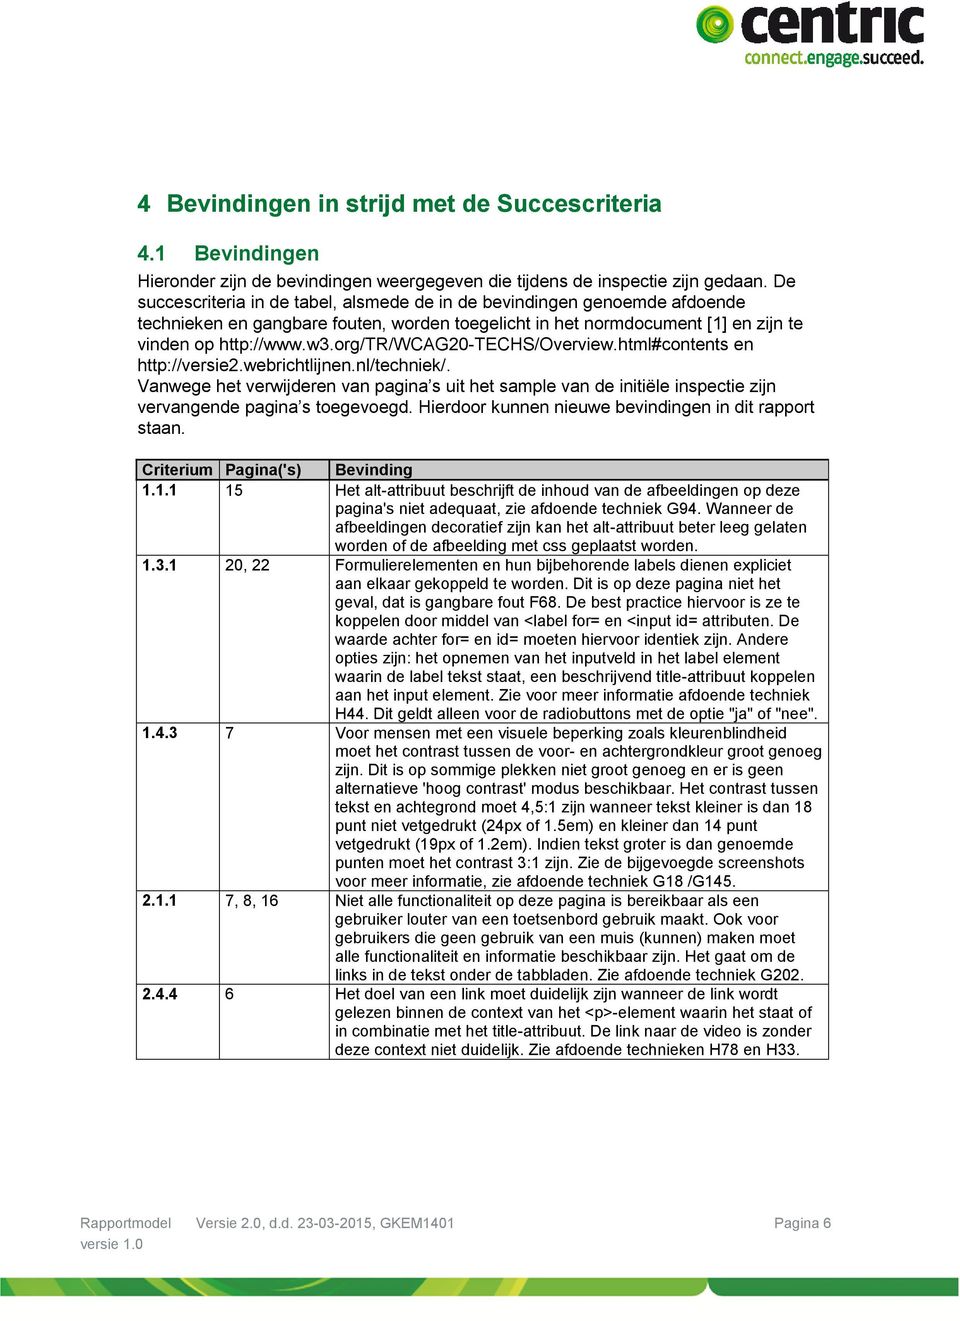 org/tr/wcag20-techs/overview.html#contents en http://versie2.webrichtlijnen.nl/techniek/.